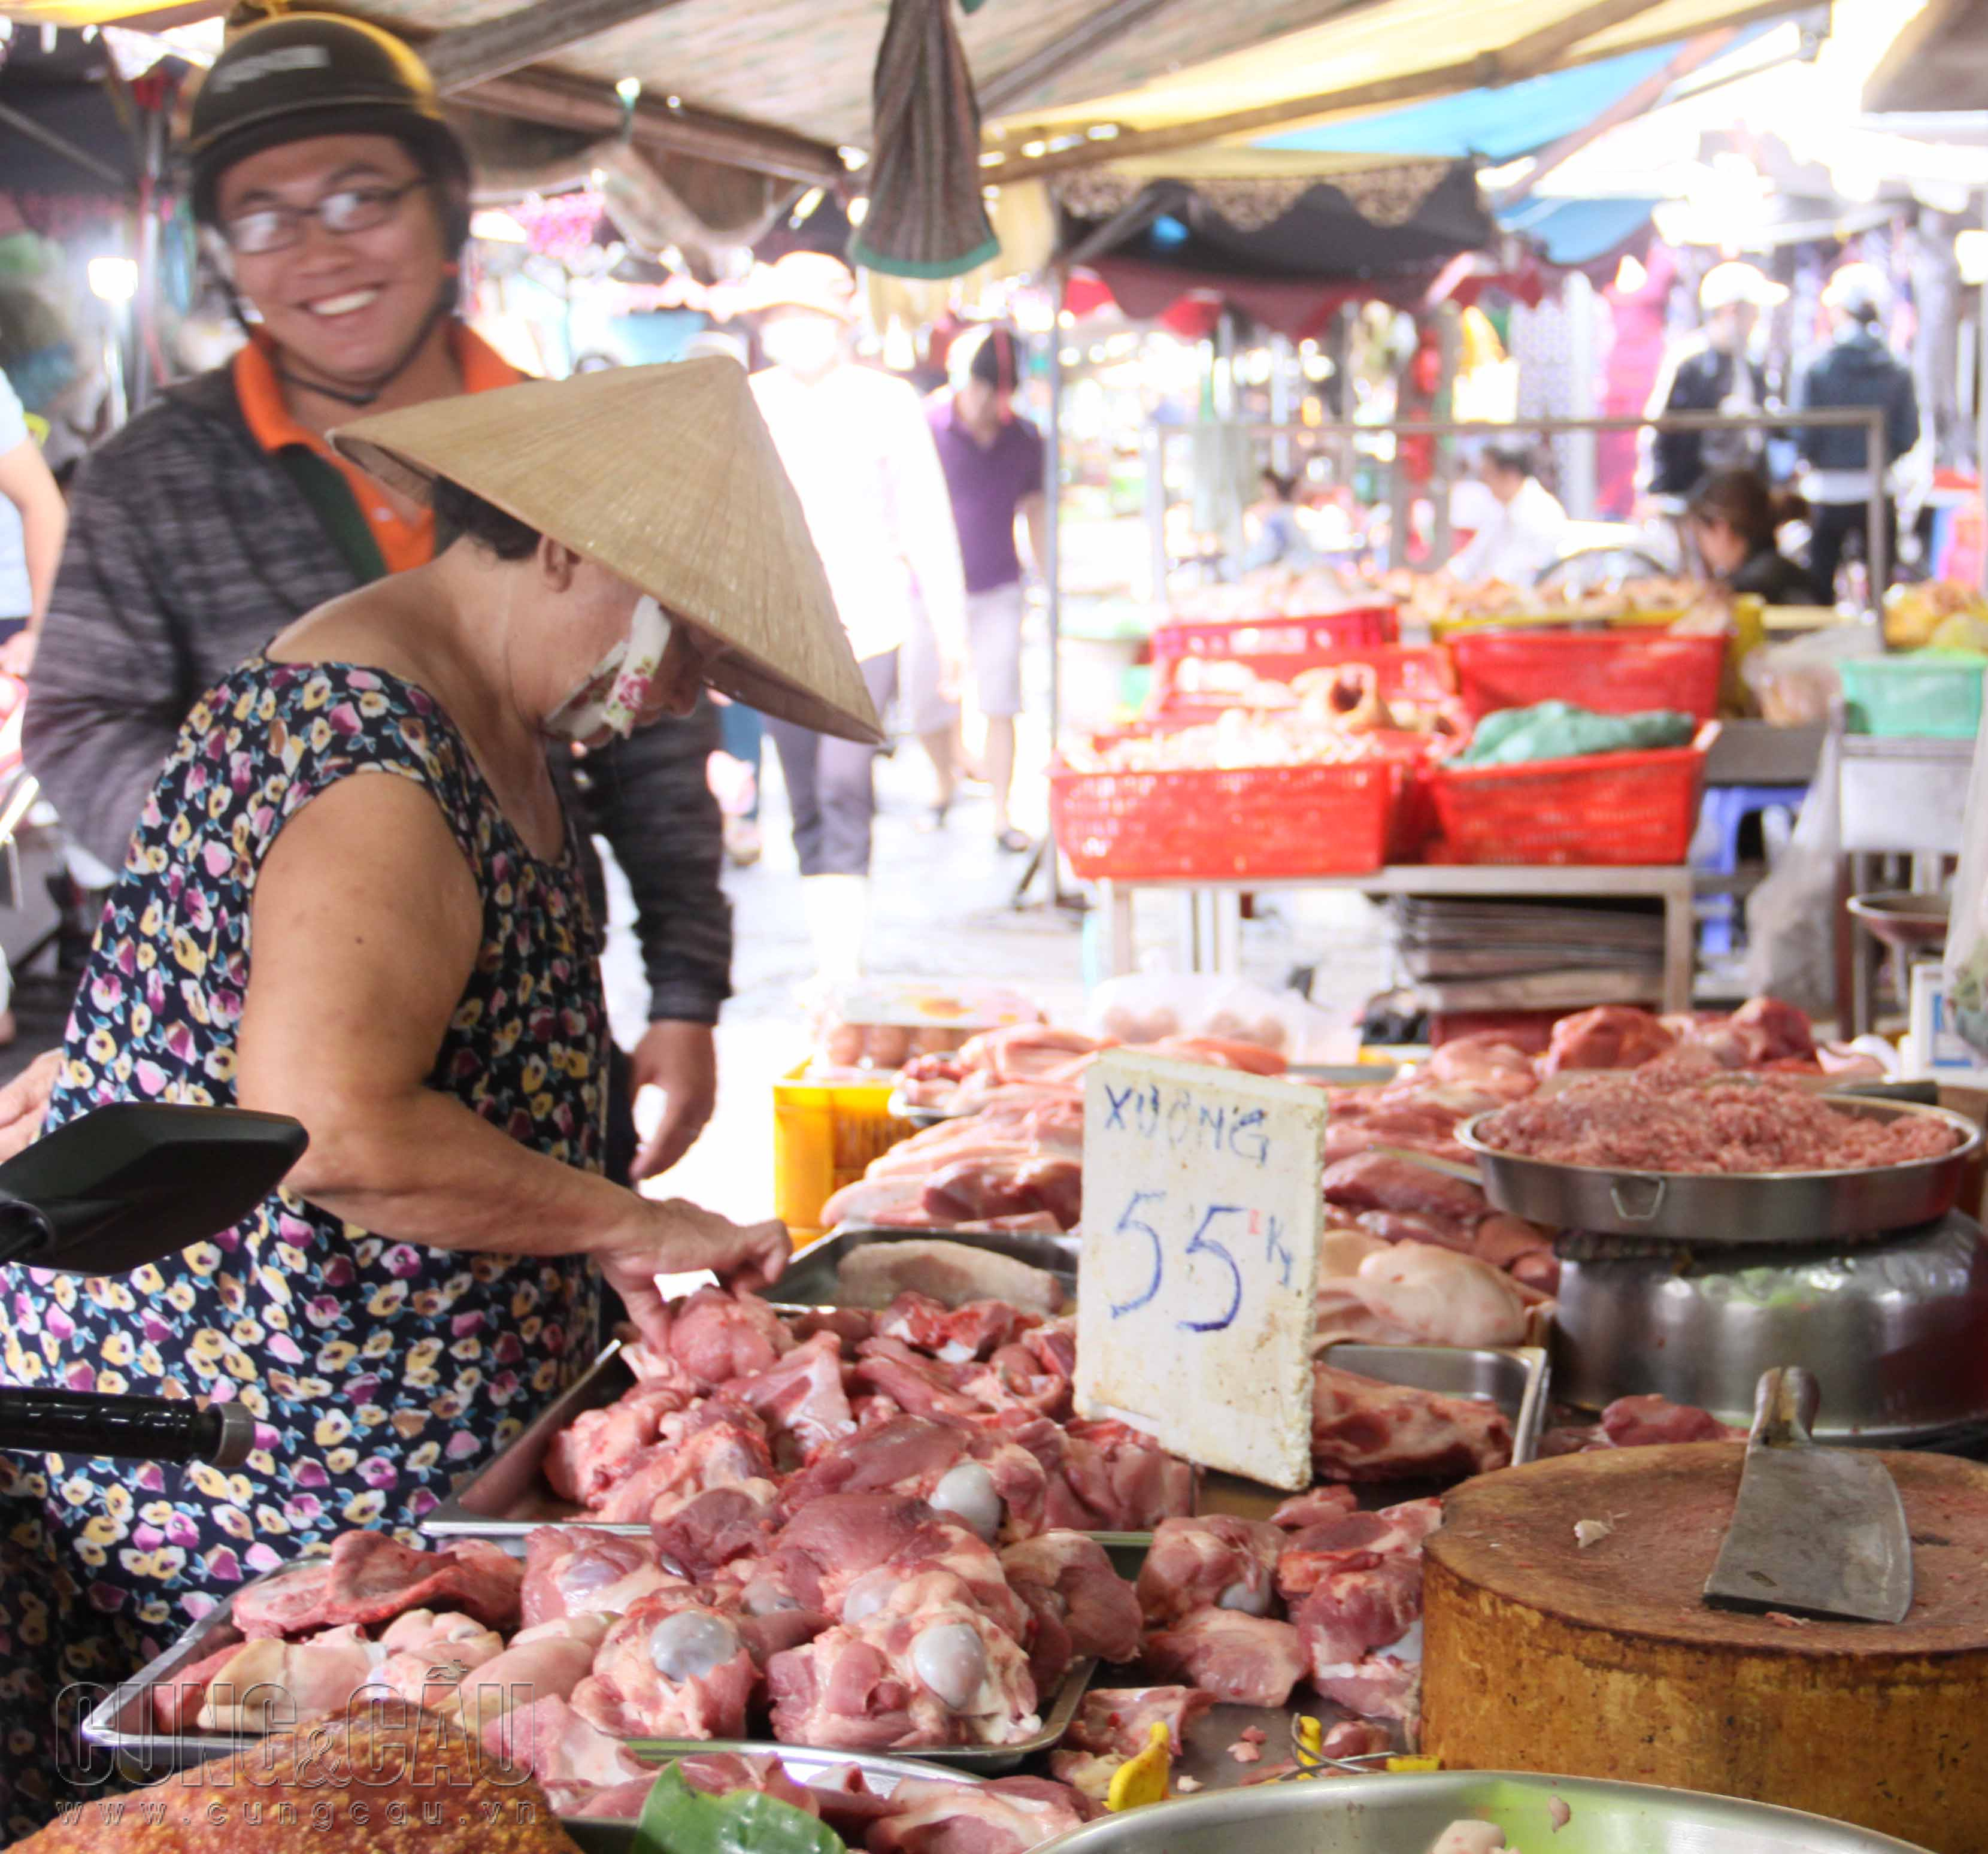 Giá thịt heo bán lẻ tại các tỉnh lẻ giảm, trong khi ở các thành phố vẫn ở mức cao.